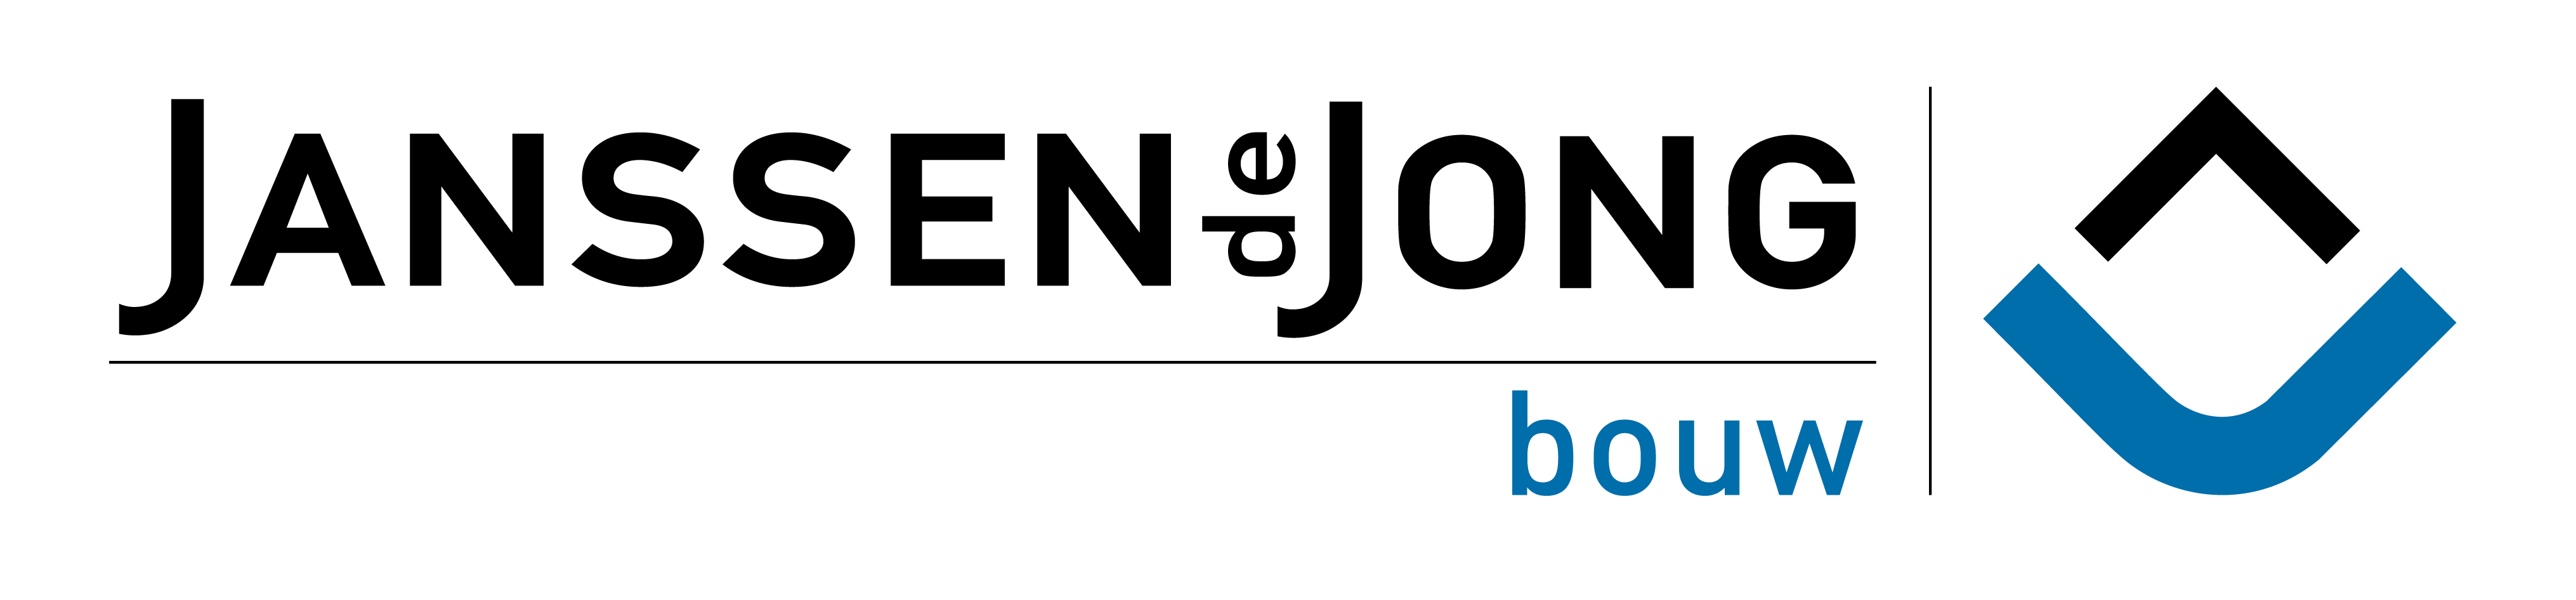 Janssen de Jong Bouw